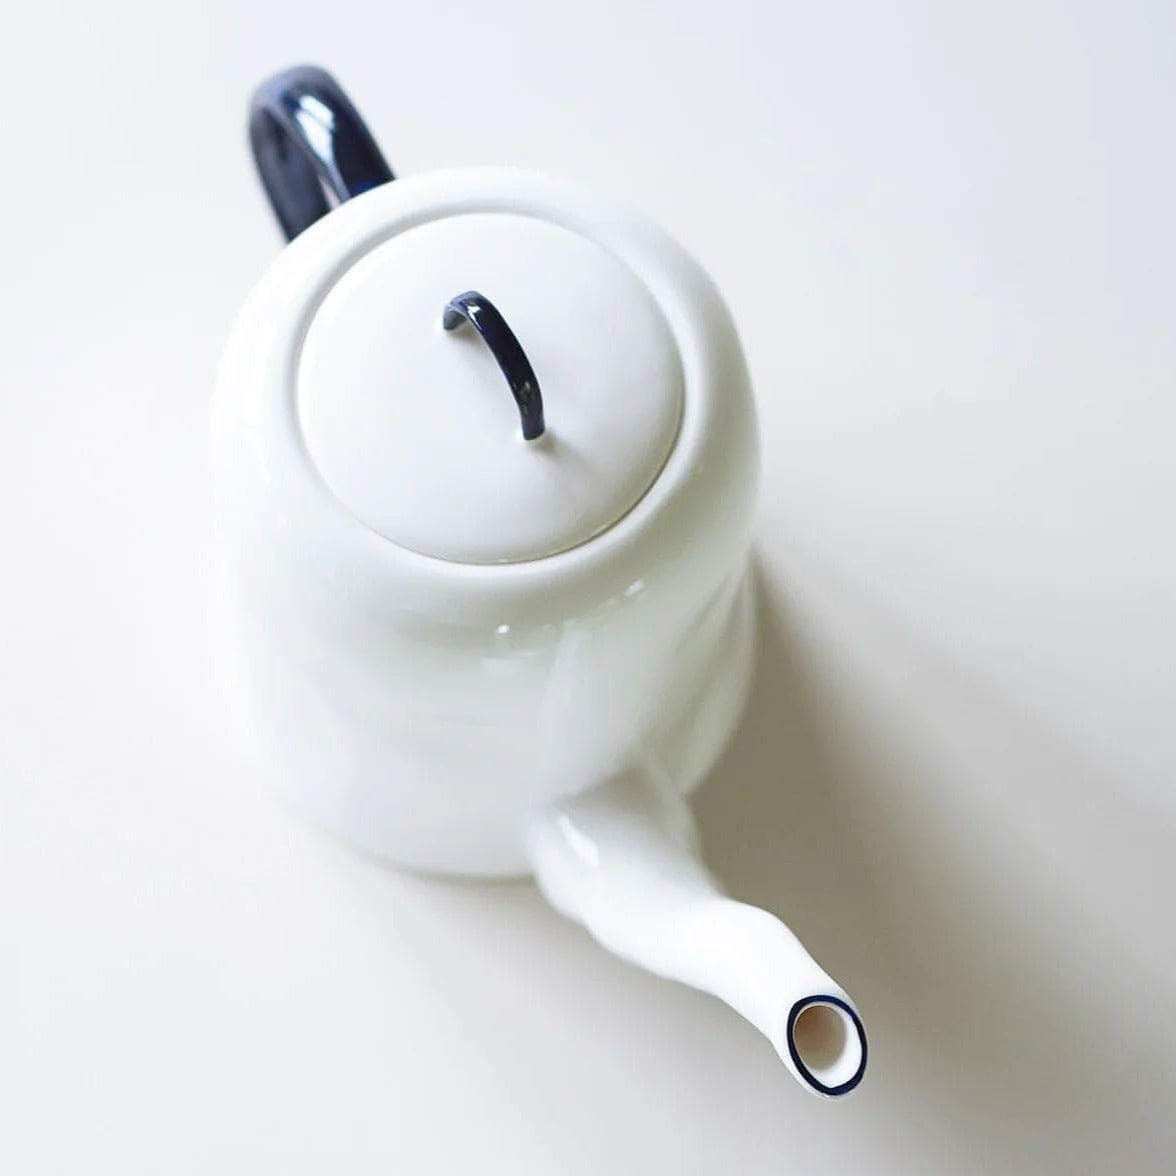 Teapot (1l)